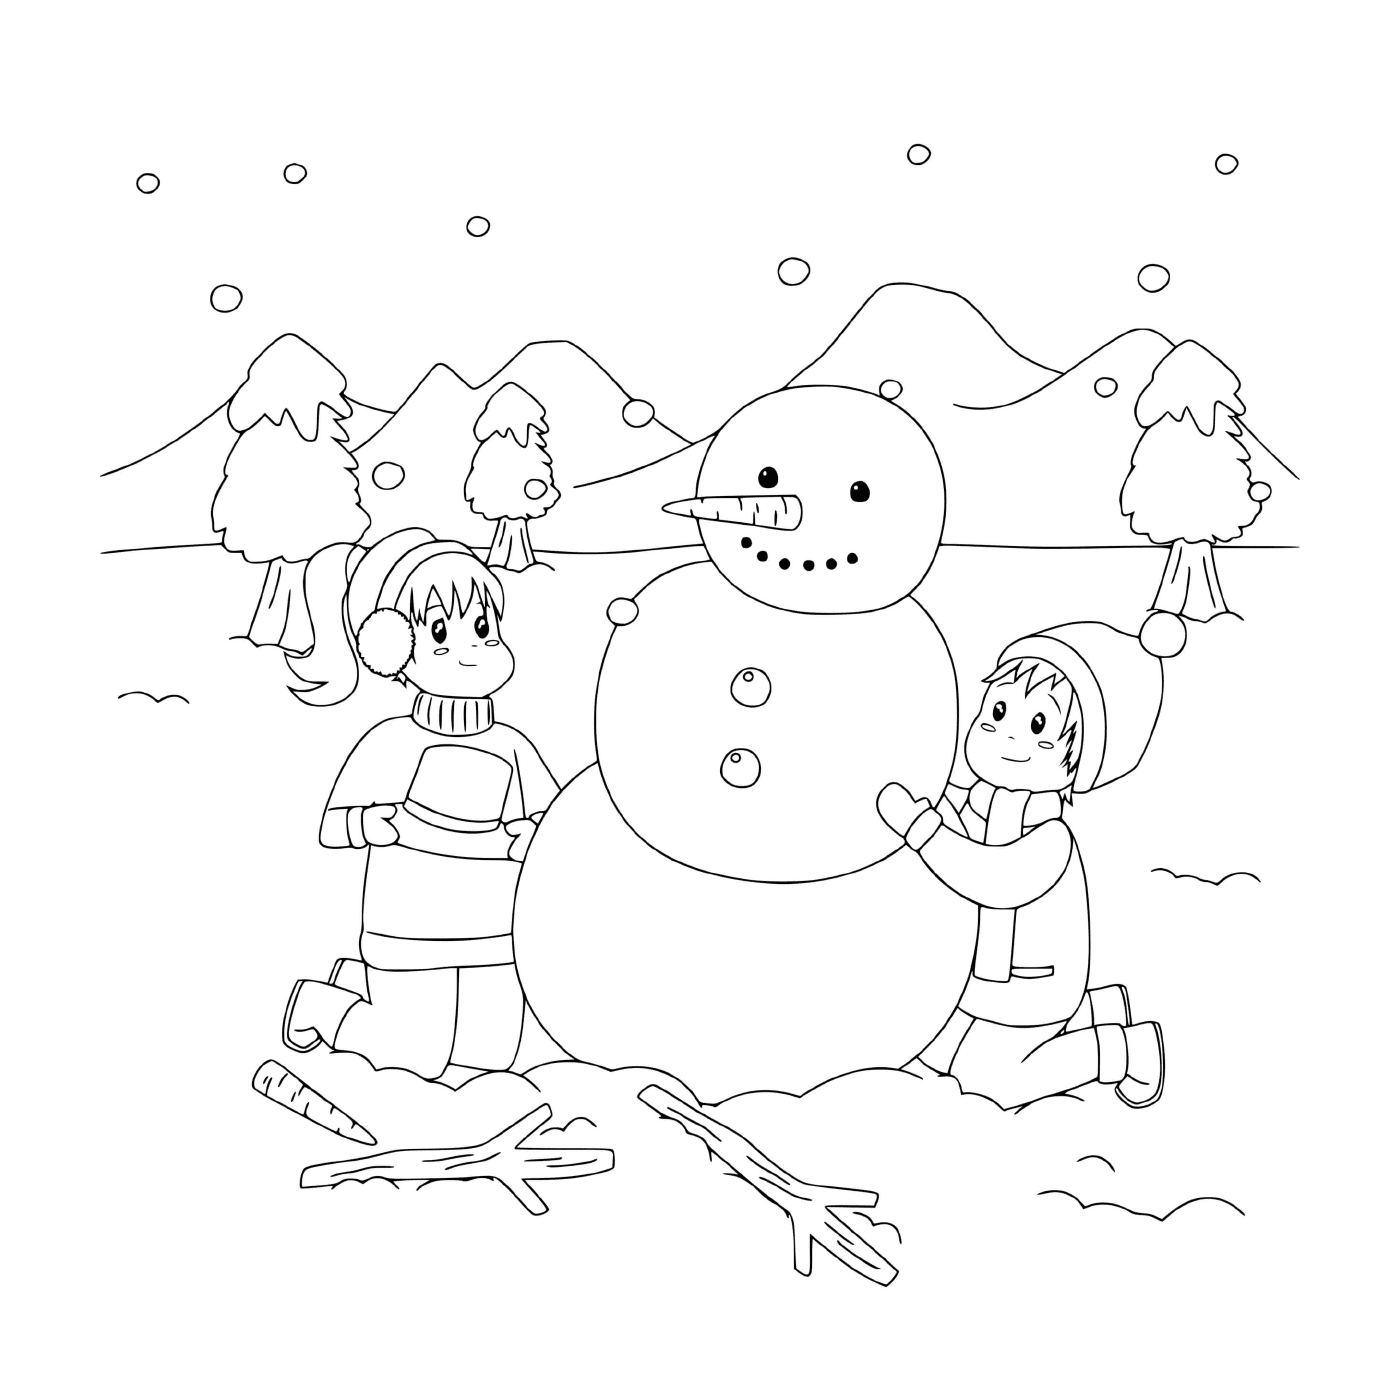   Enfants construisant un bonhomme de neige dans un paysage enneigé 